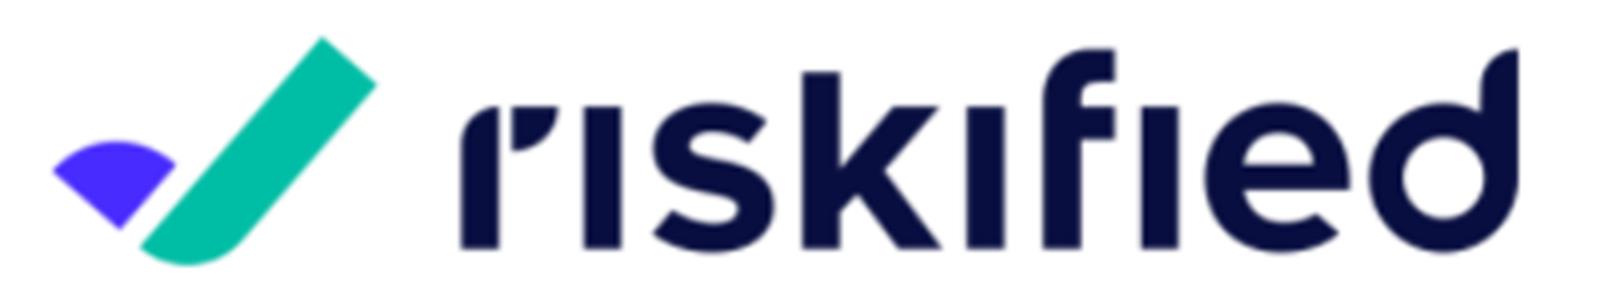 RSKD logo